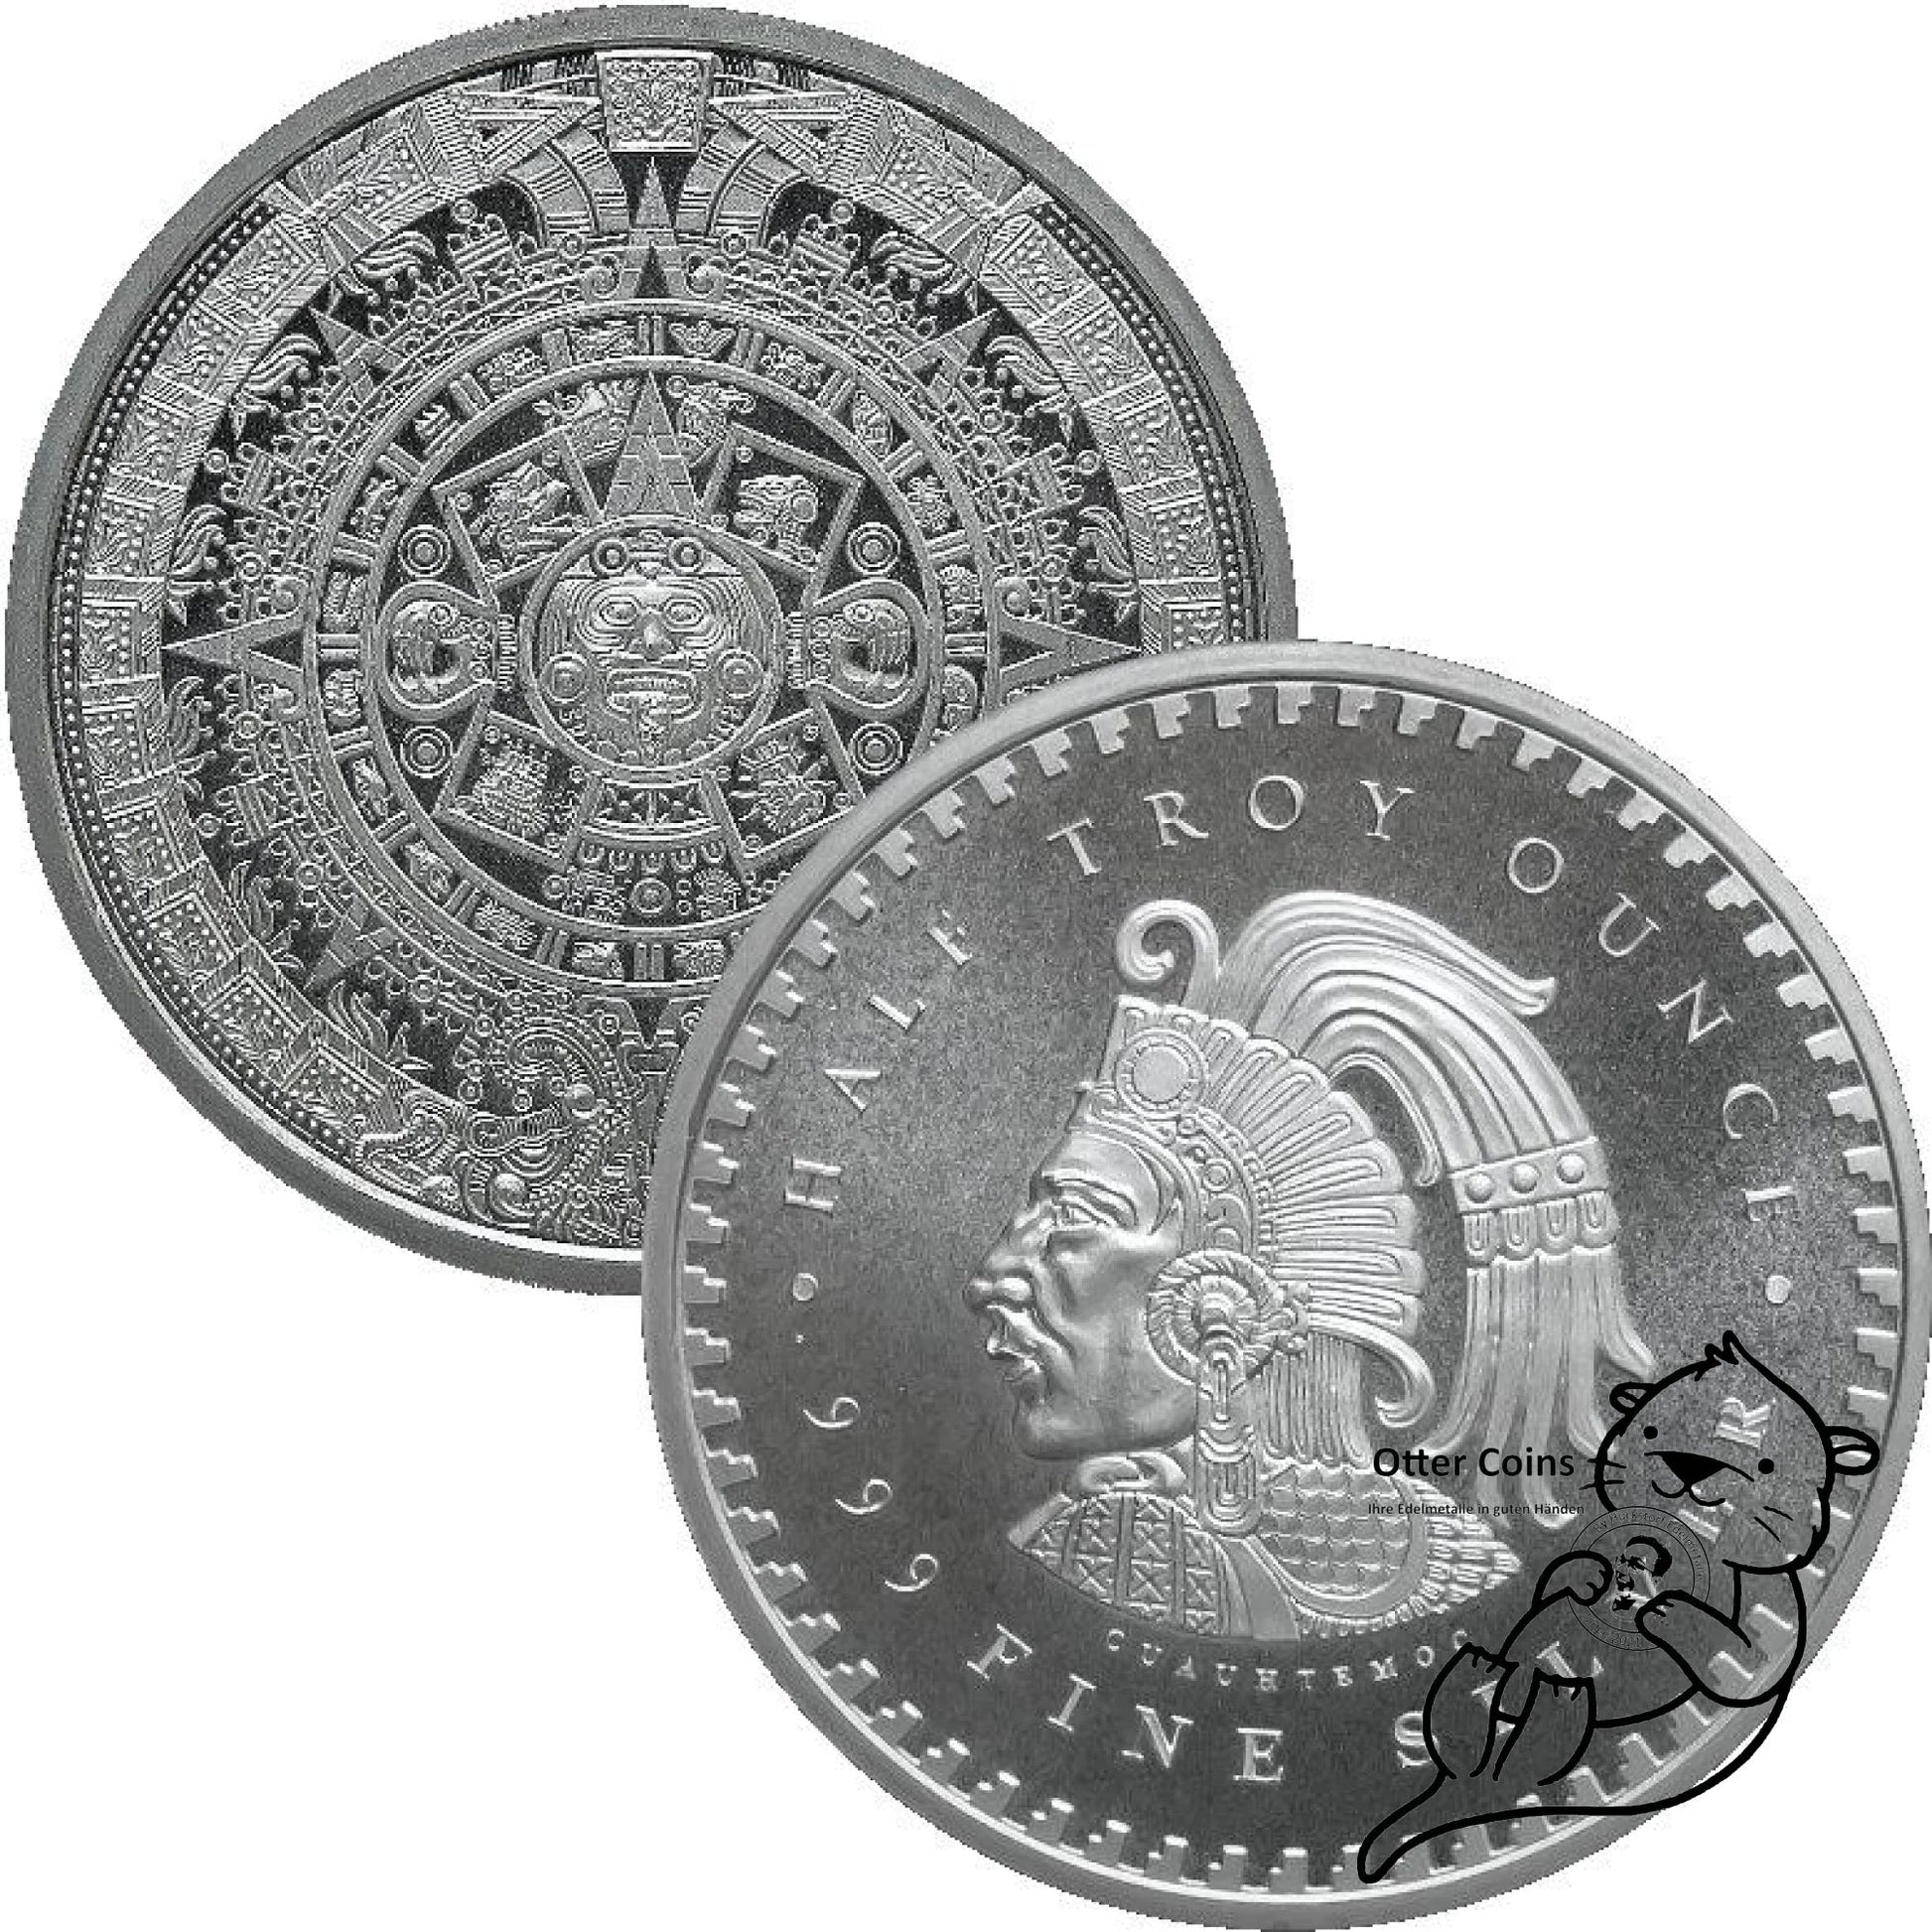 Aztekenkalender 1/2 oz Silbermünze